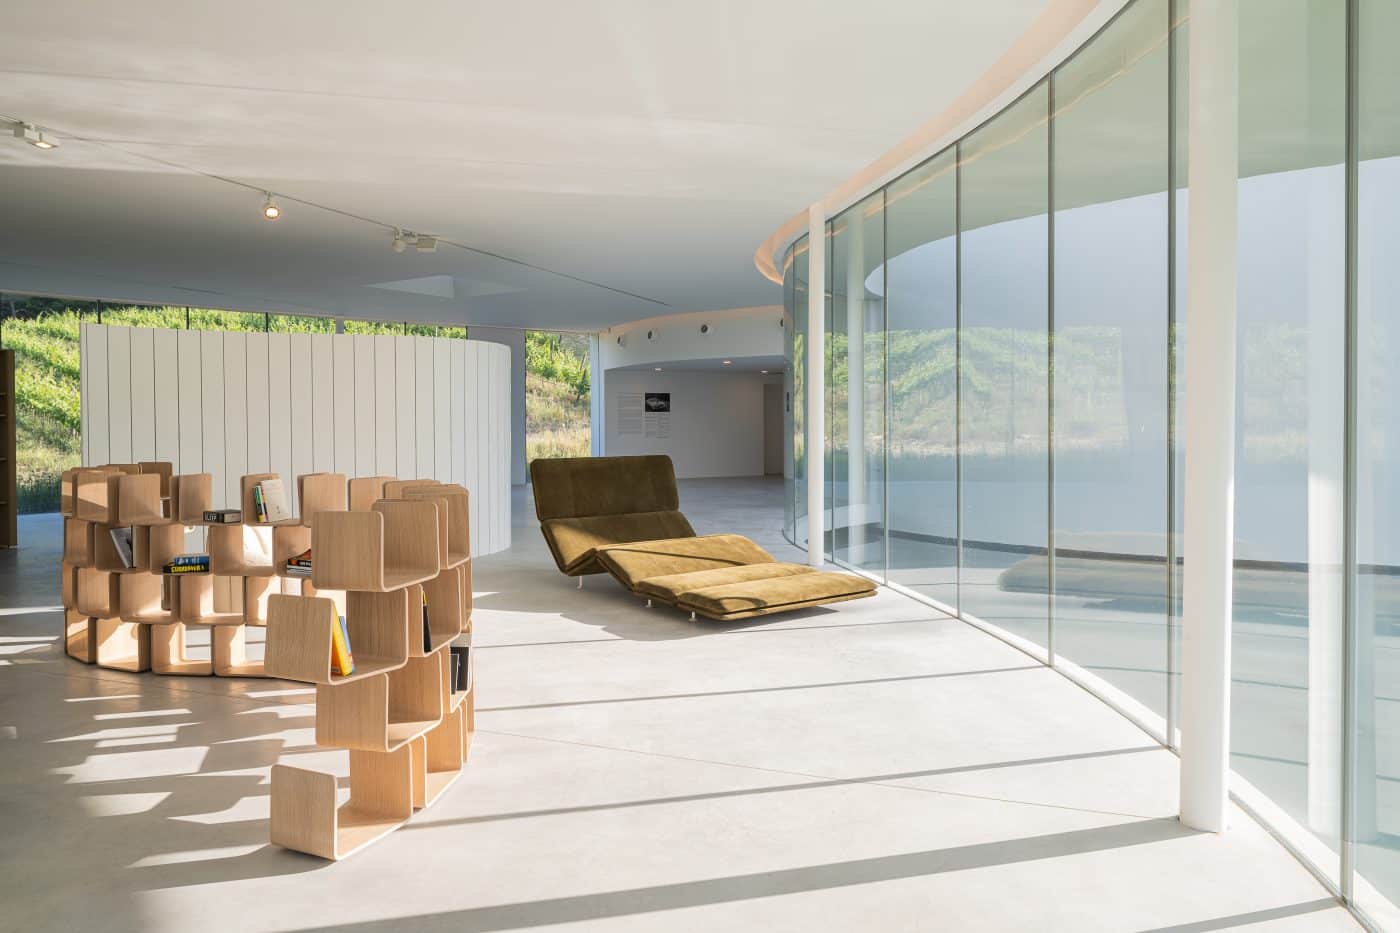 
Paulin's La Vague partition, Module U shelving unit and Déclive n°3 chaise longue installed in the Oscar Niemeyer–designed Auditorium at the Château La Coste. 